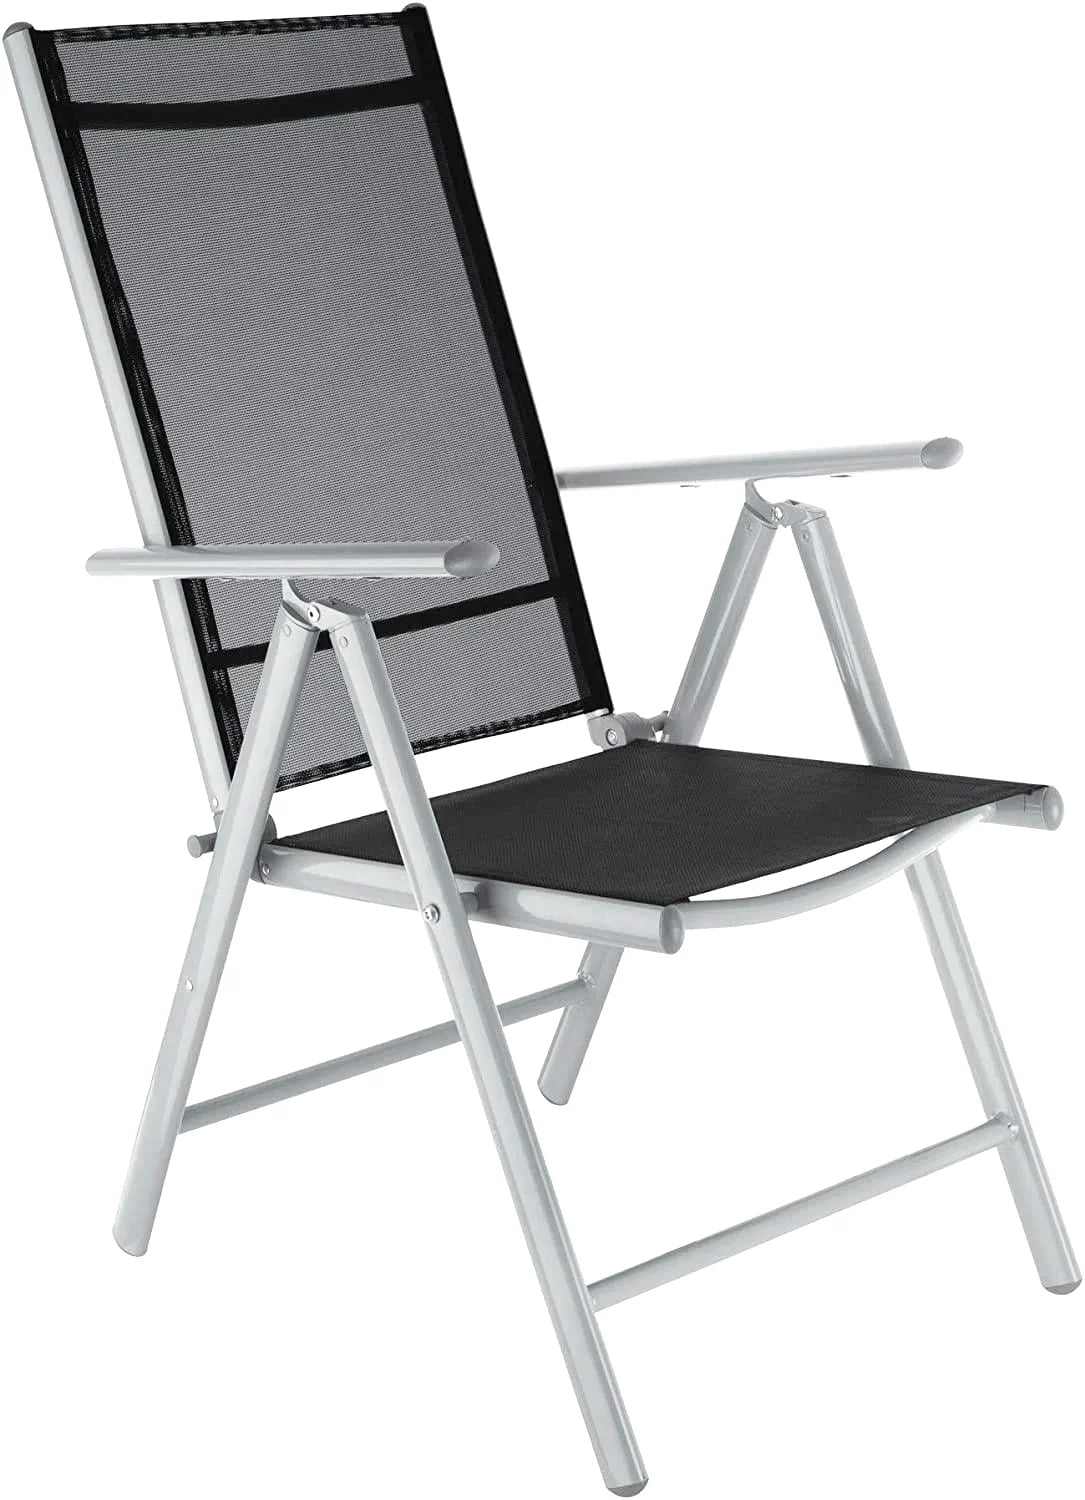 Table et chaise pliante extérieur – Fournisseur numéro 1 de la